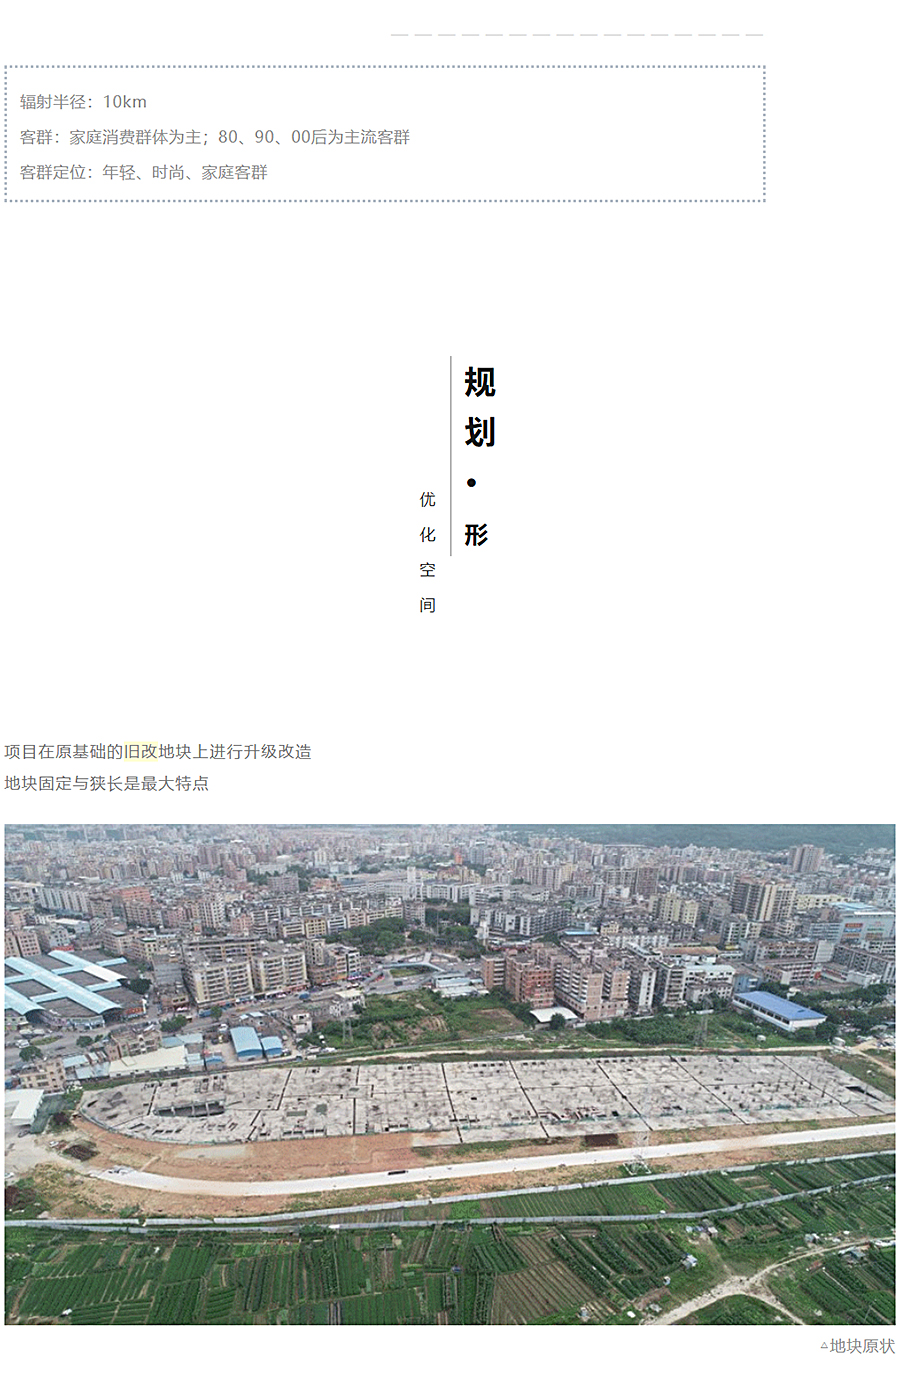 重构感知空间丨太和城商业广场_0006_图层-7 拷贝.jpg